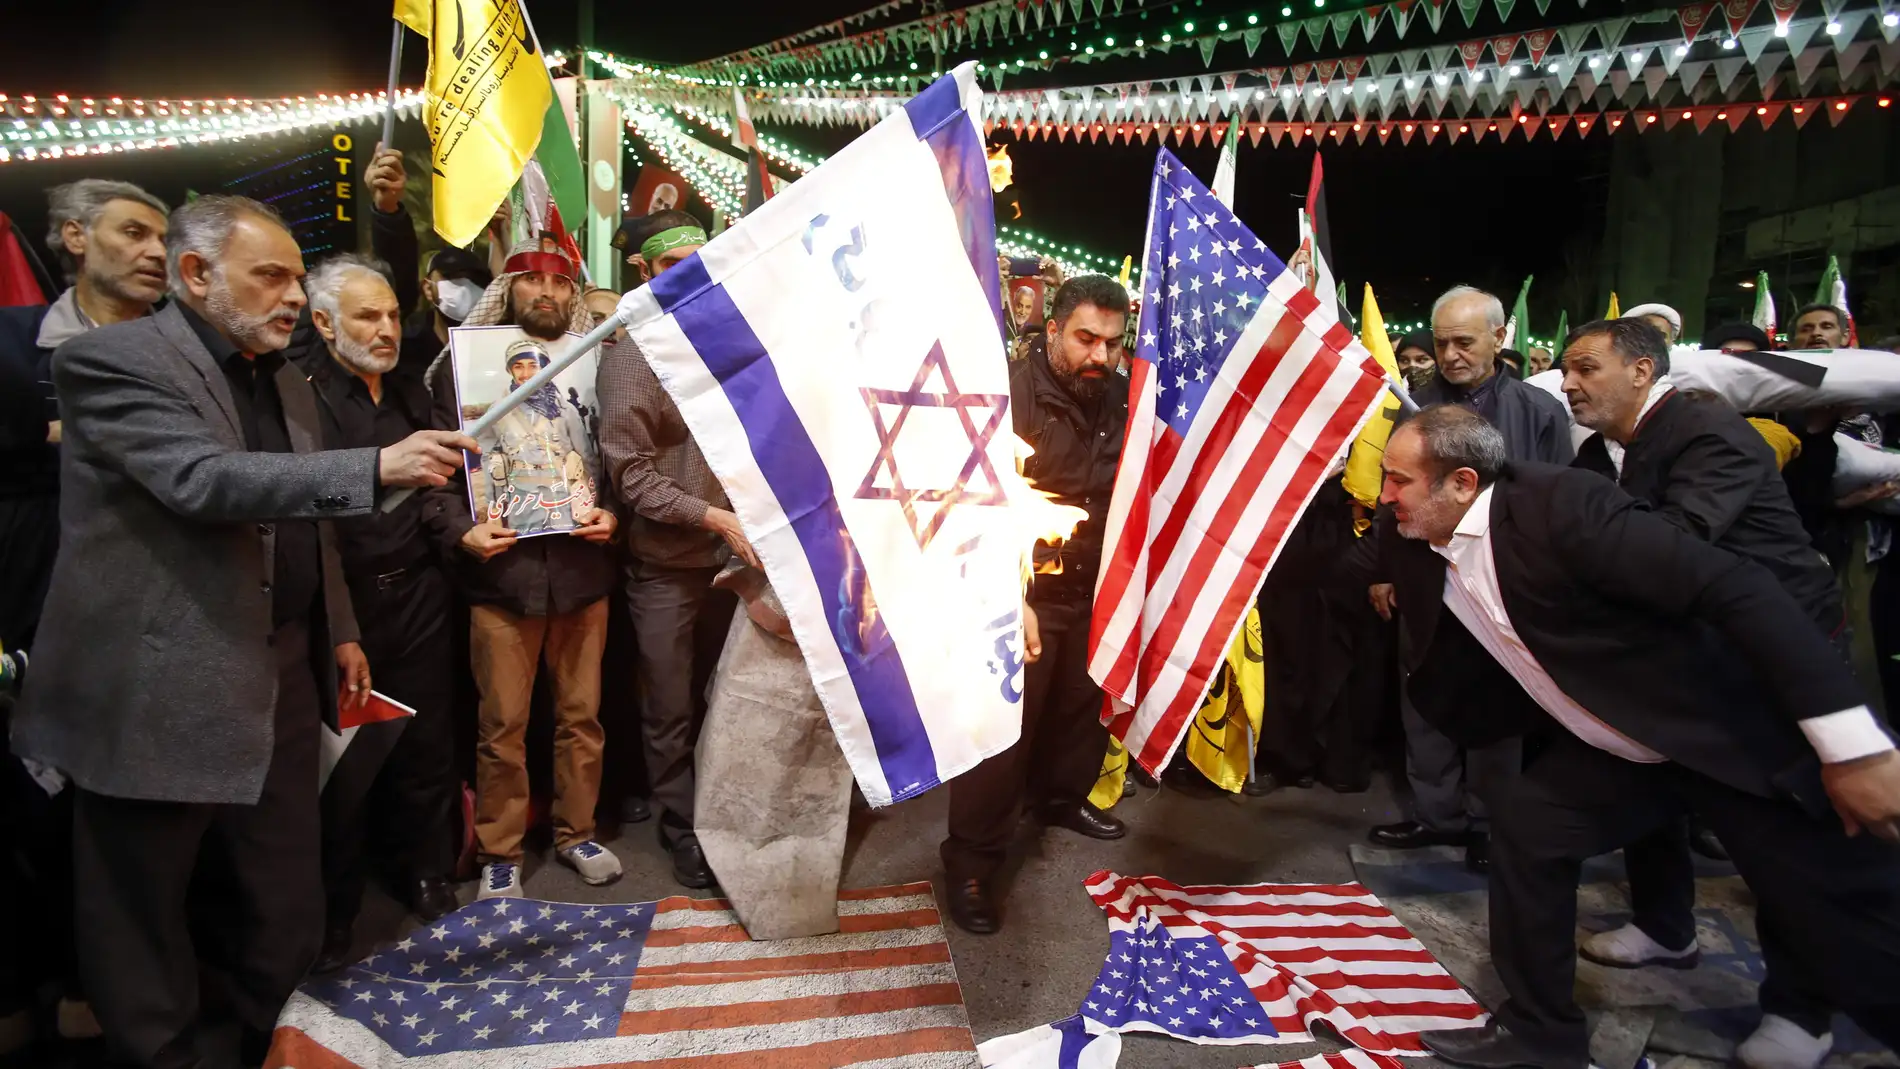 Iraníes queman banderas de Israel y Estados Unidos durante una manifestación antiisraelí en la plaza Palestina de Teherán (Irán)